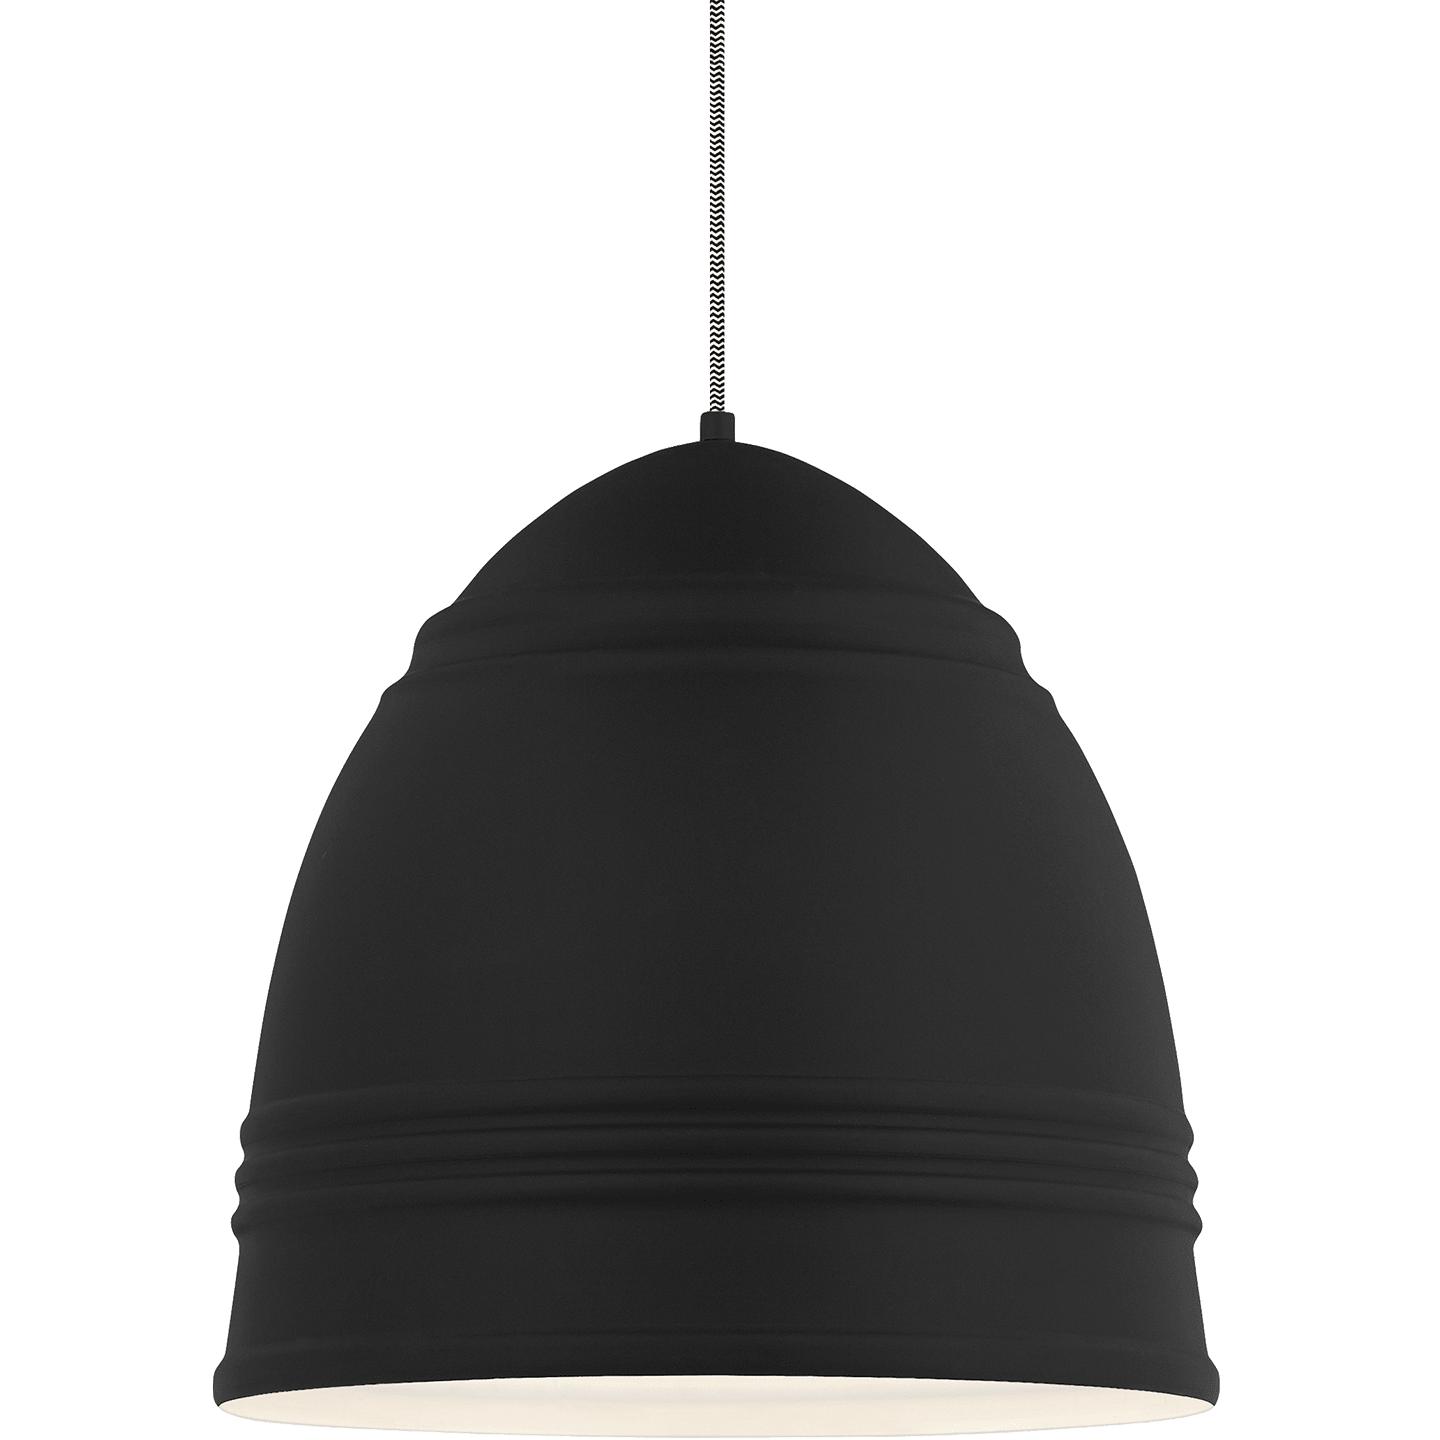 Купить Подвесной светильник Loft Grande Pendant в интернет-магазине roooms.ru